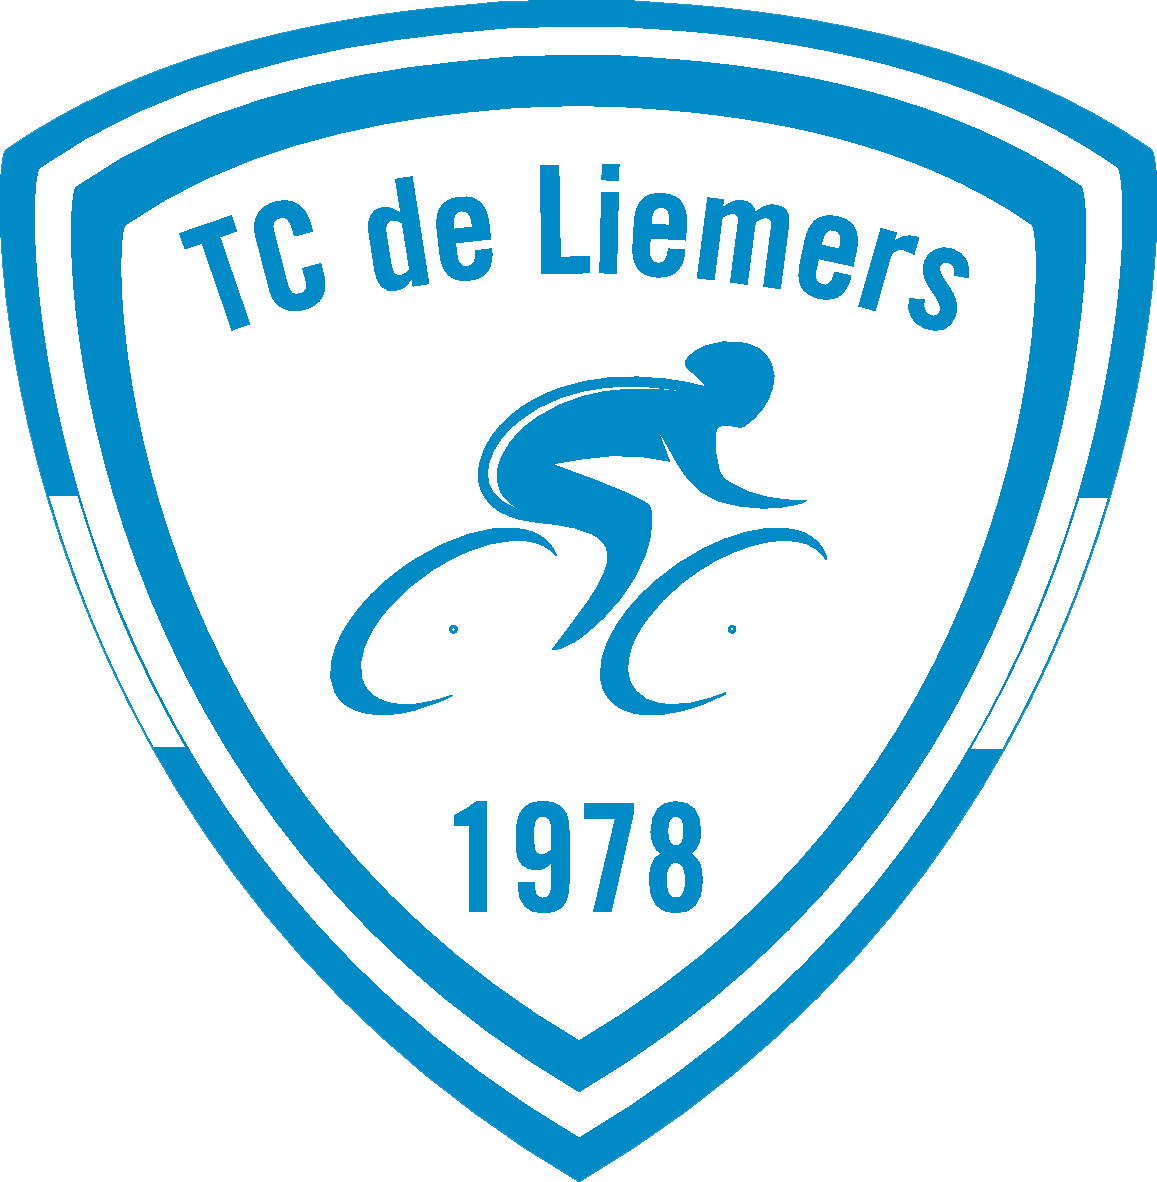 TC de Liemers 900dpi 1